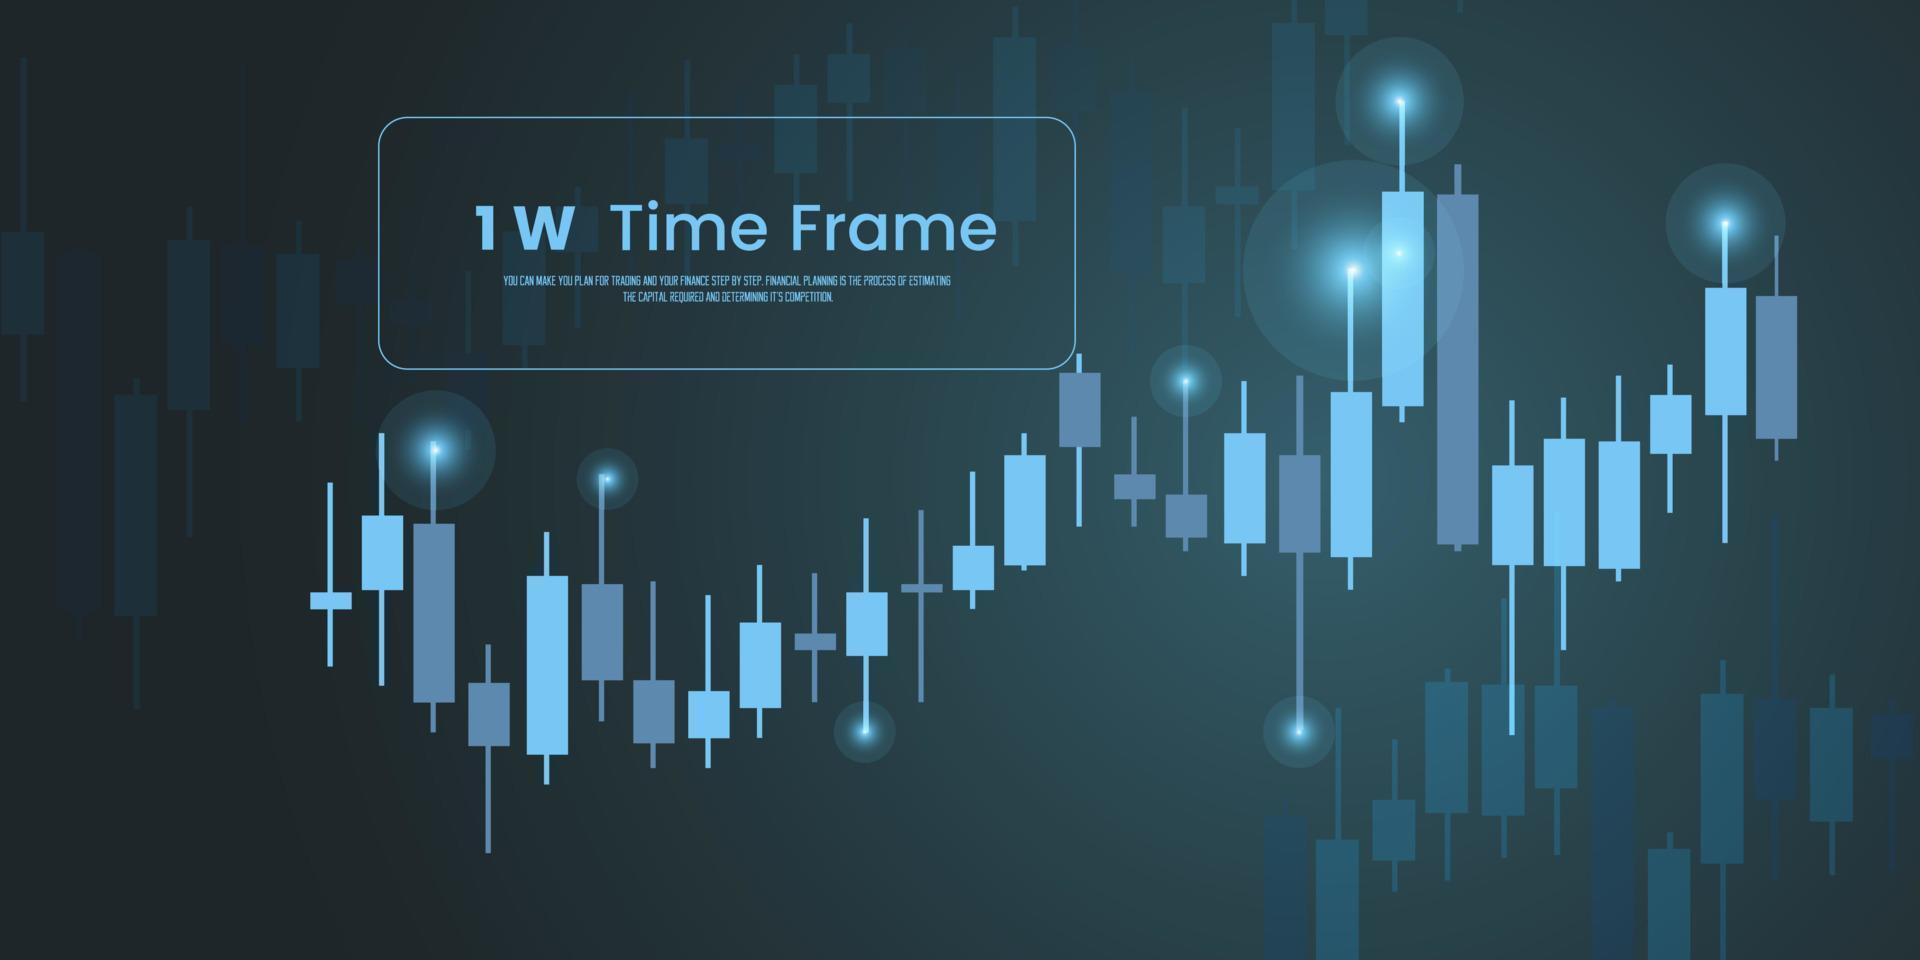 Marco de tiempo de 1w, barras de velas de color azul del gráfico comercial, gráfico de barras, tendencia del mercado de valores alcista y diseño de concepto de comercio técnico forex. vector